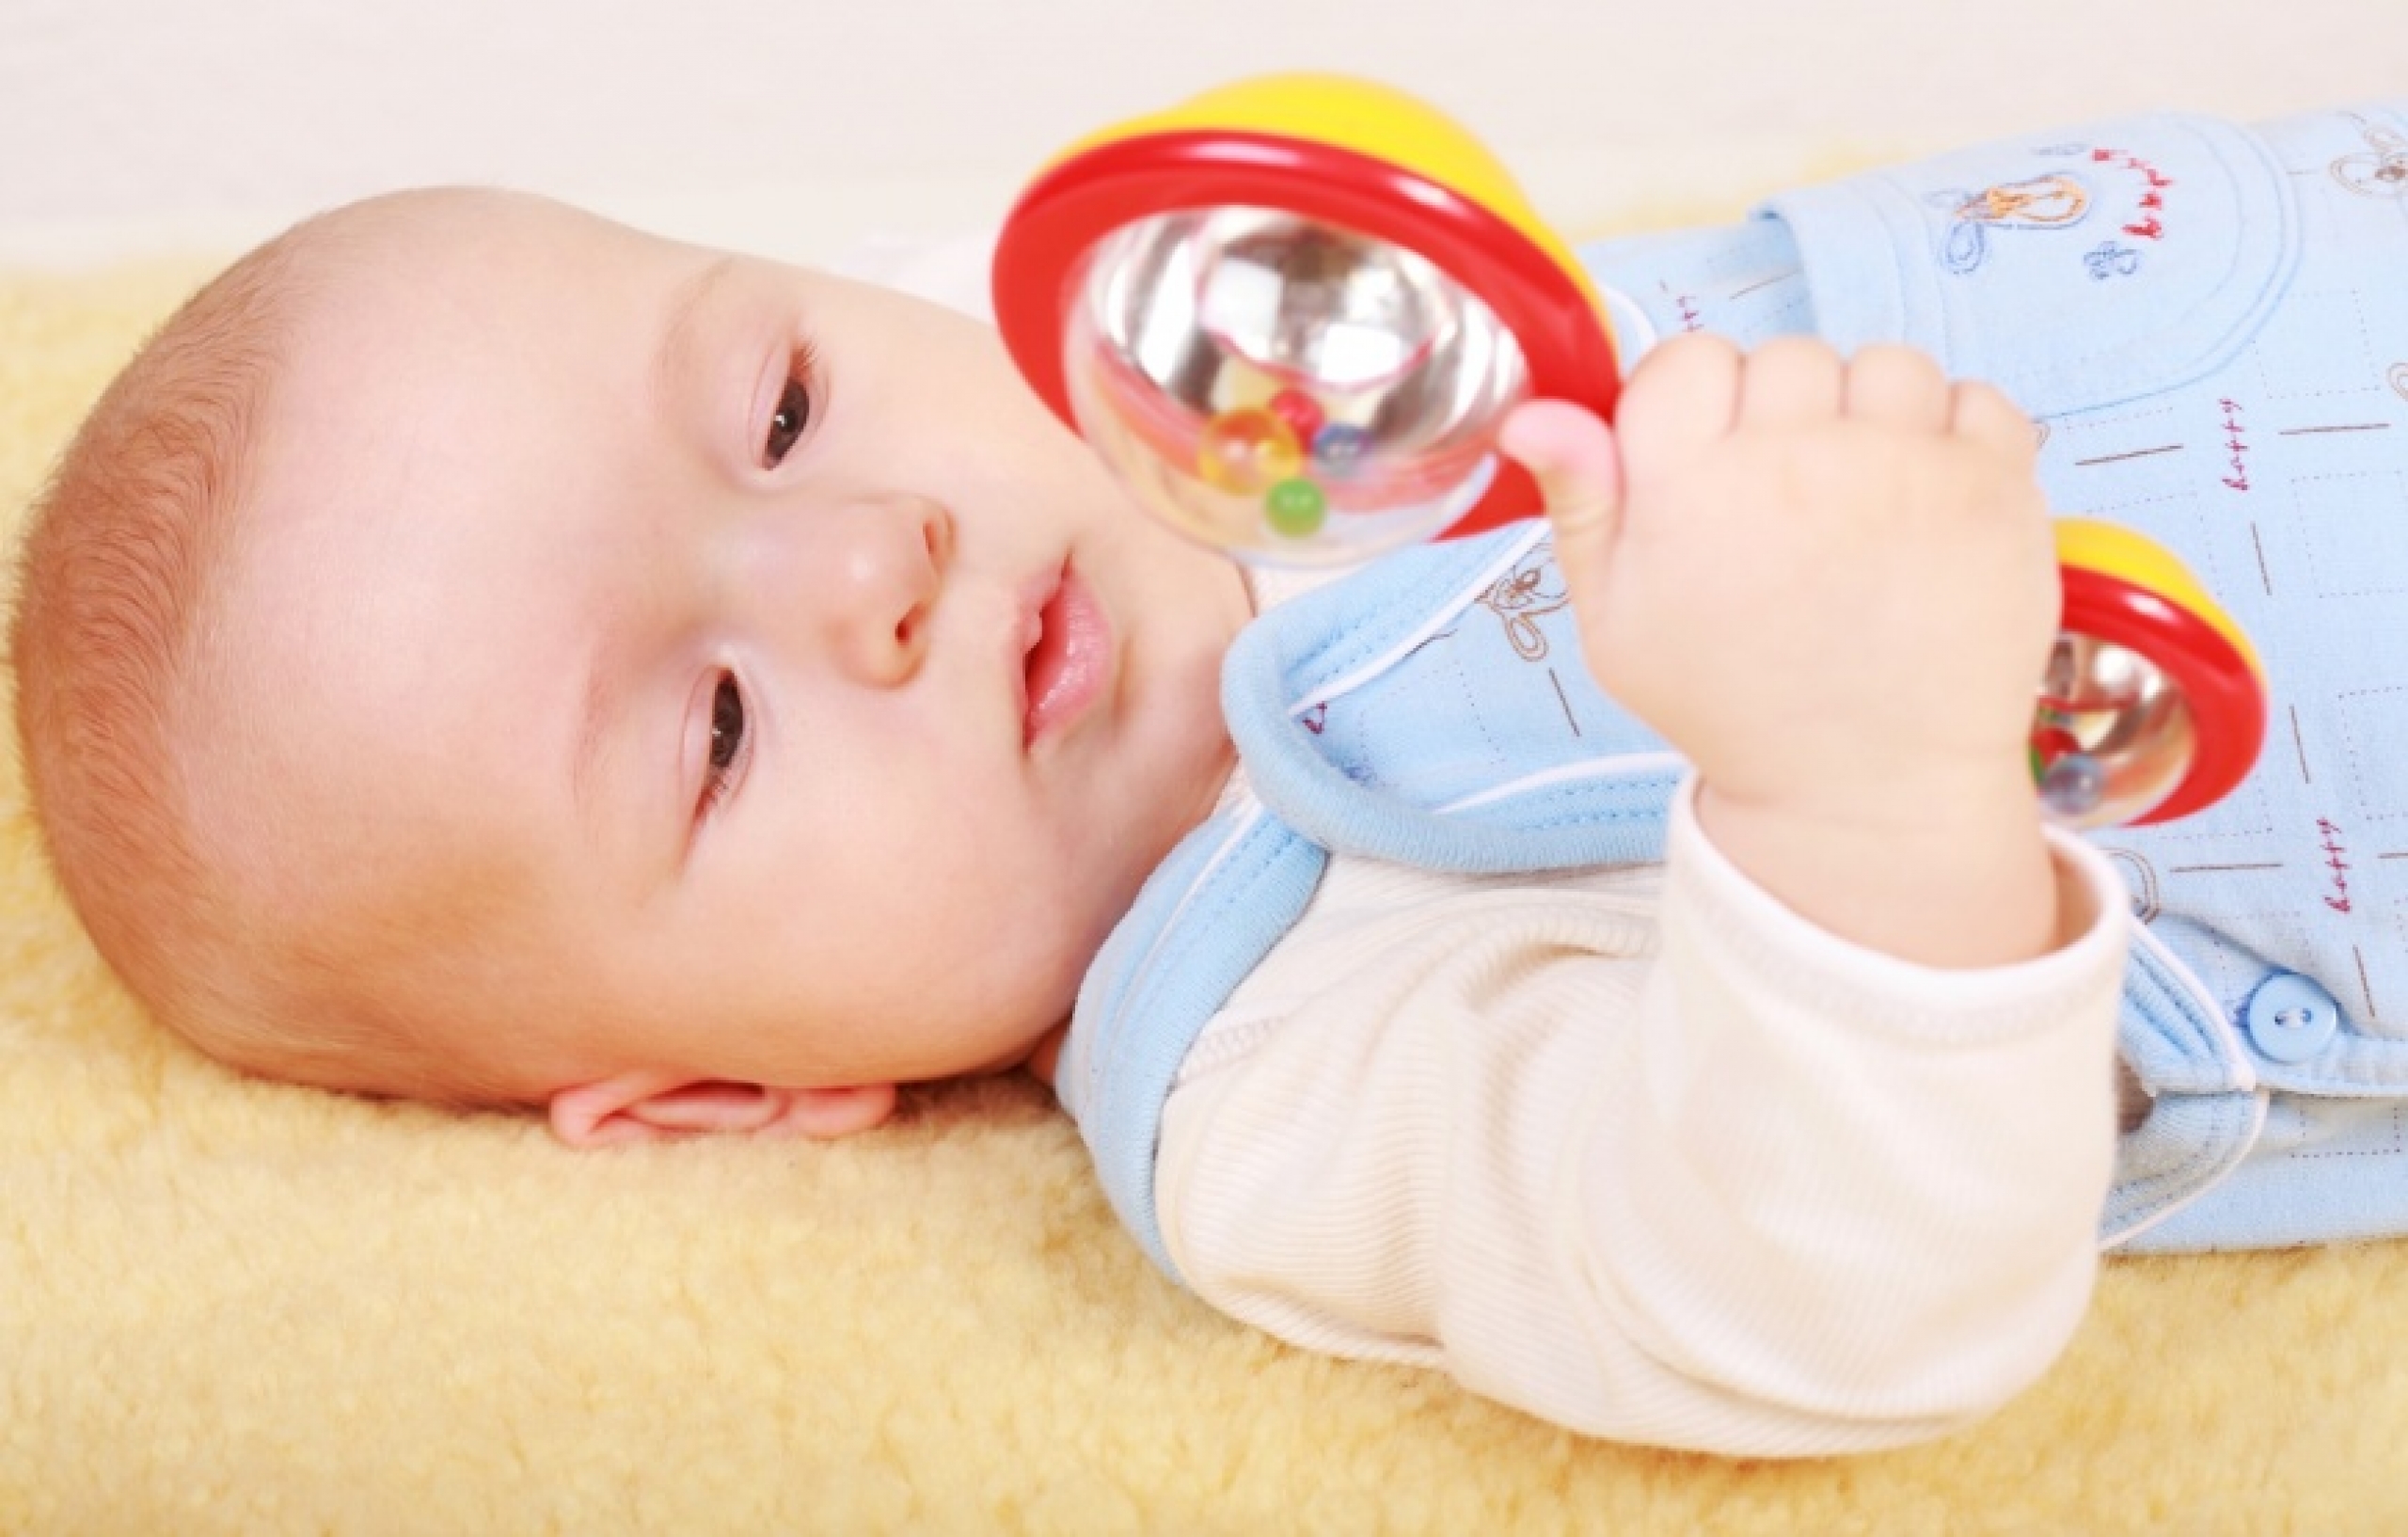 Развивающие игрушки для ребенка до года: чем занять малыша от 0 до 3 месяцев